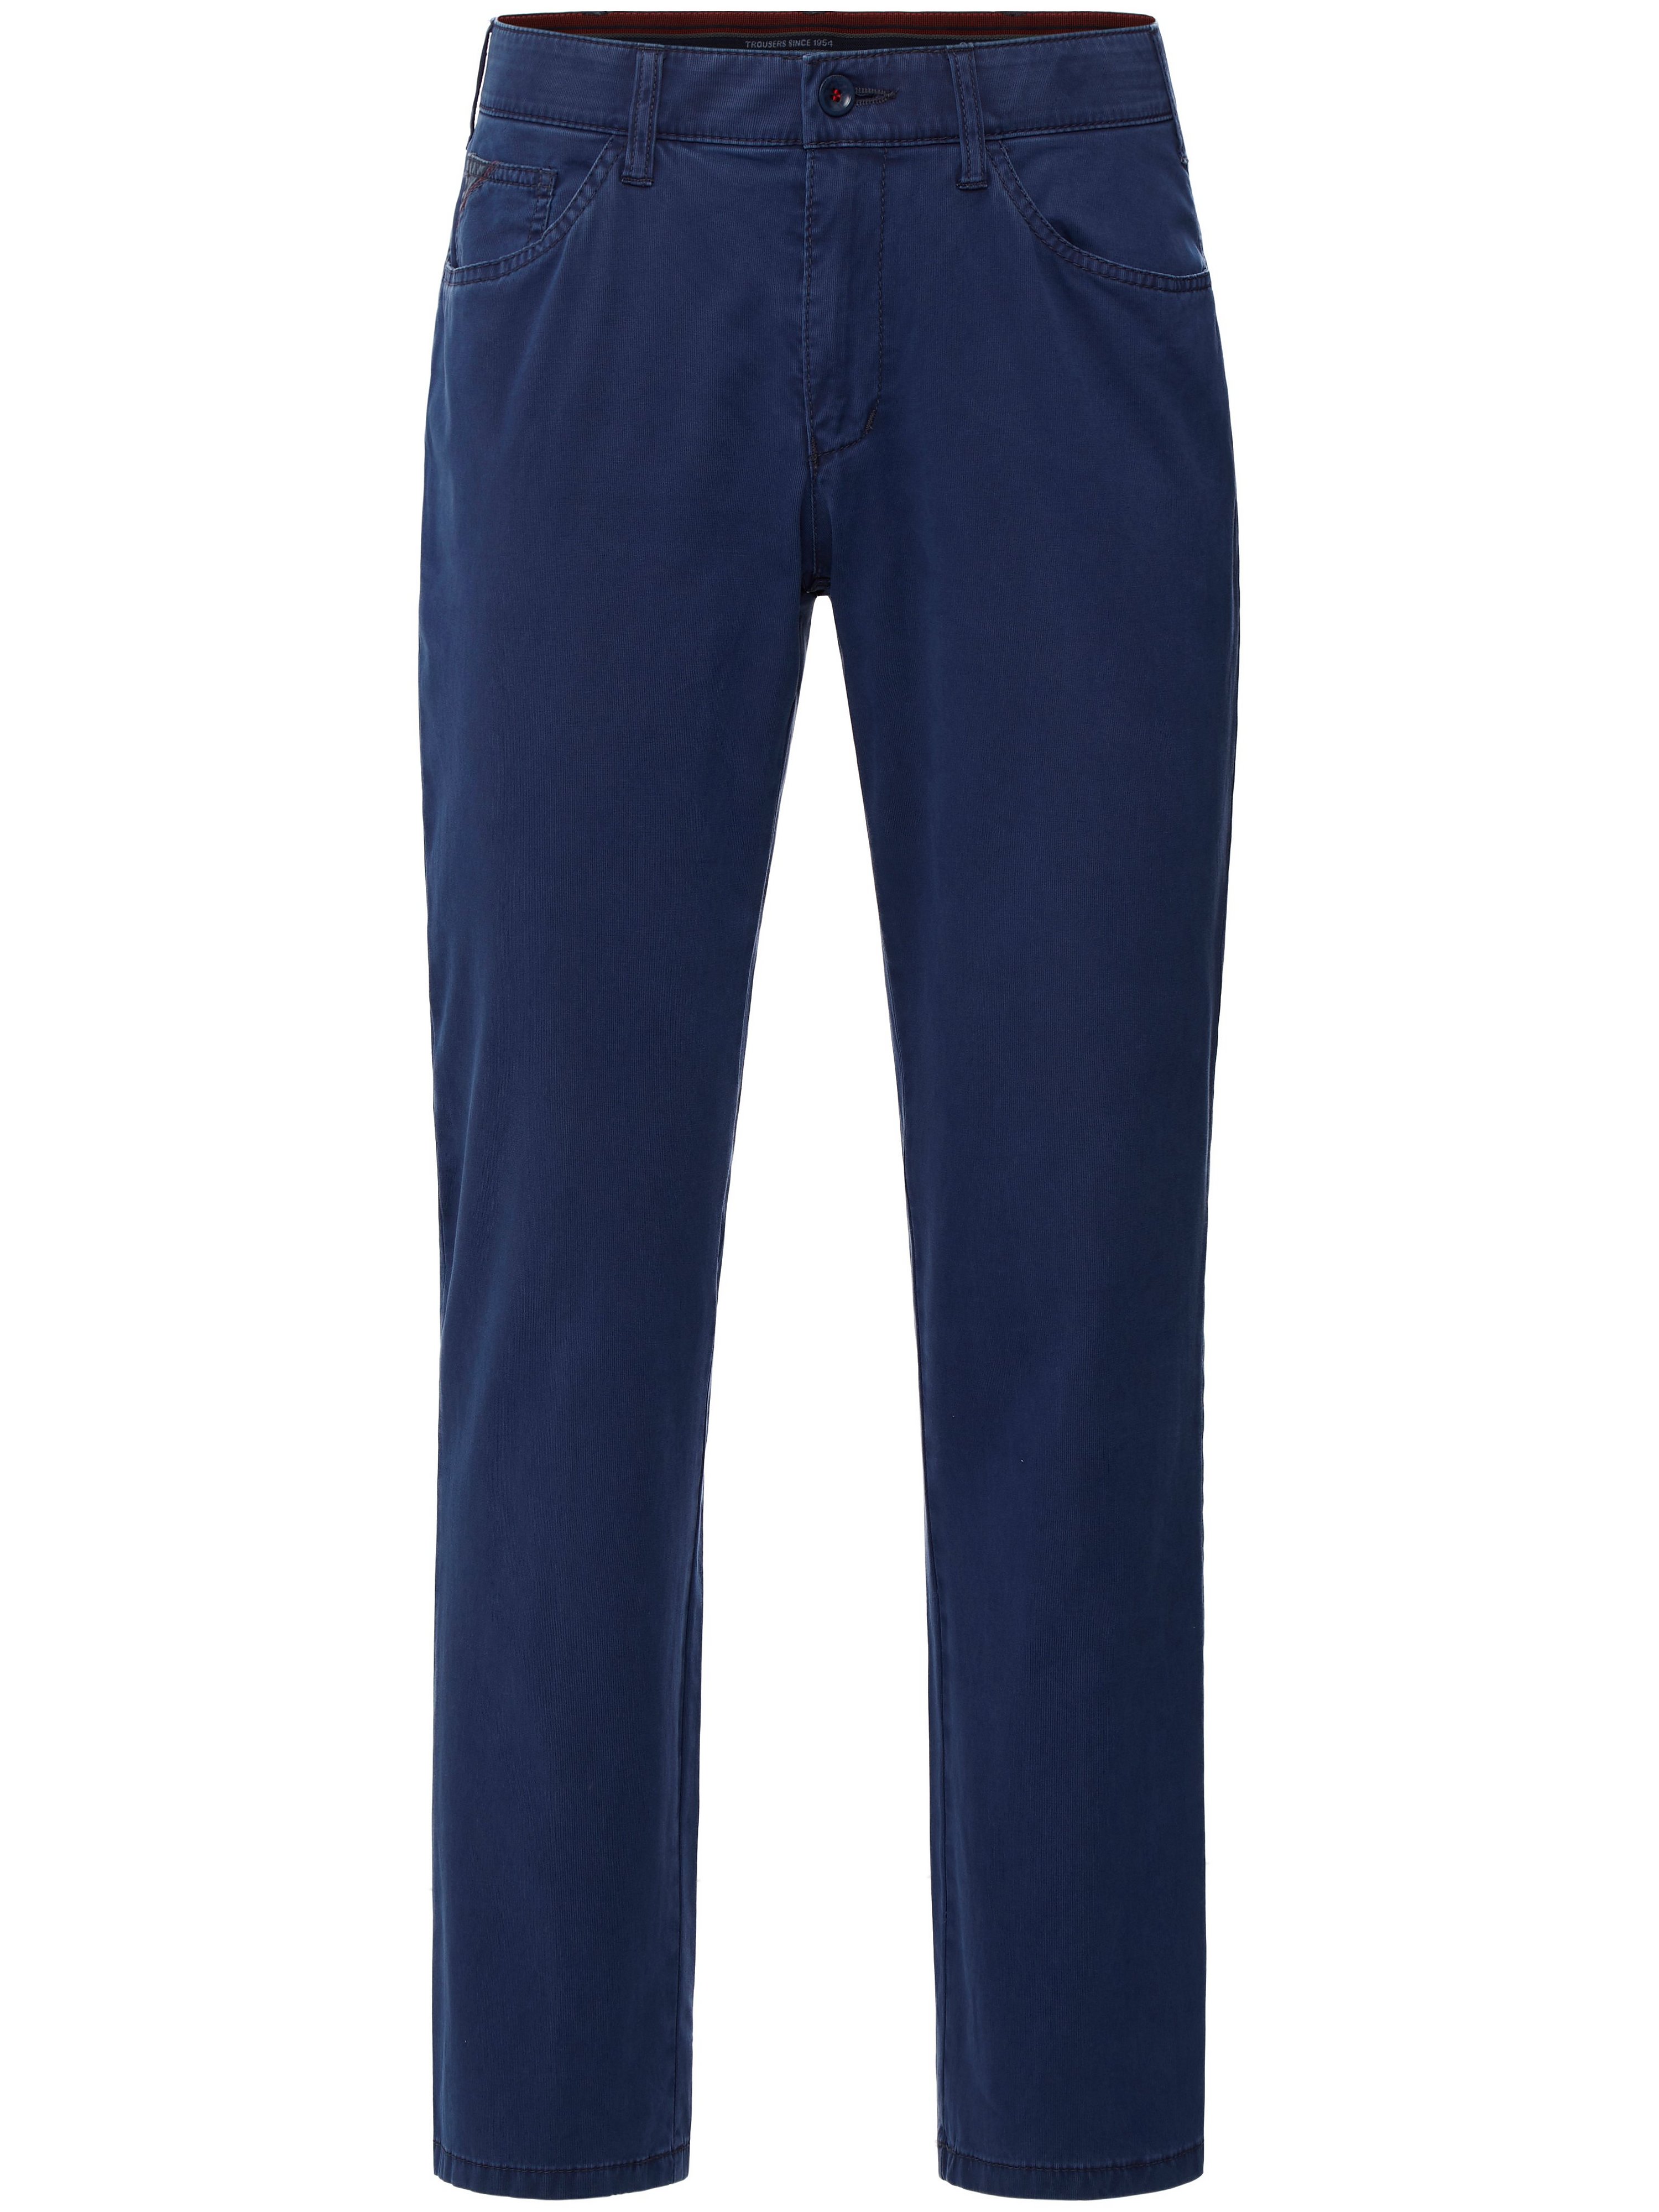 Le pantalon Comfort Fit modèle Keno  CLUB OF COMFORT bleu taille 27